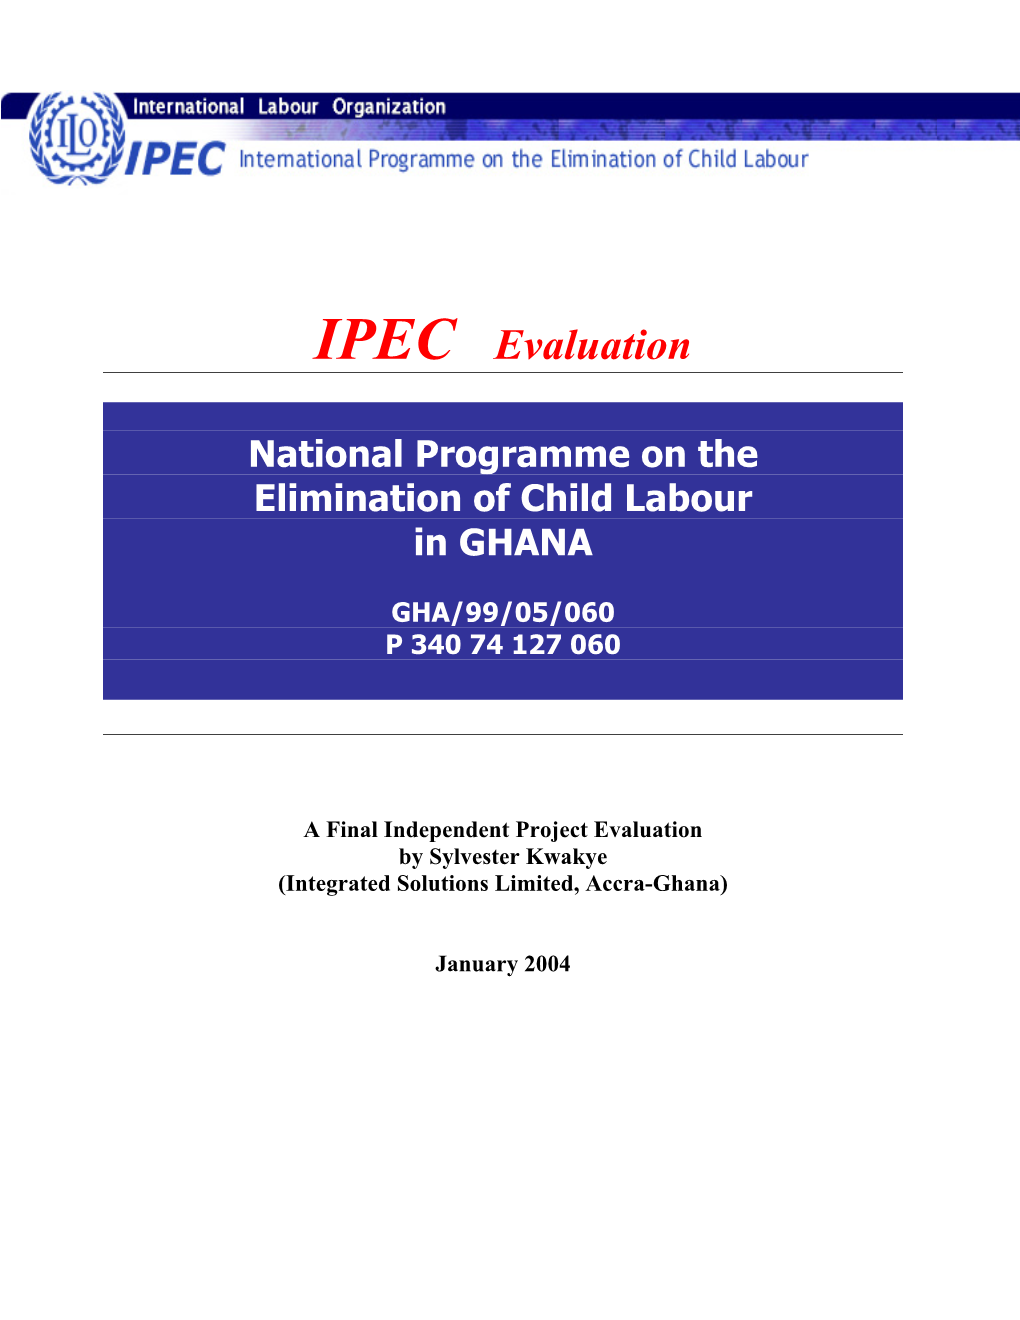 IPEC Evaluation